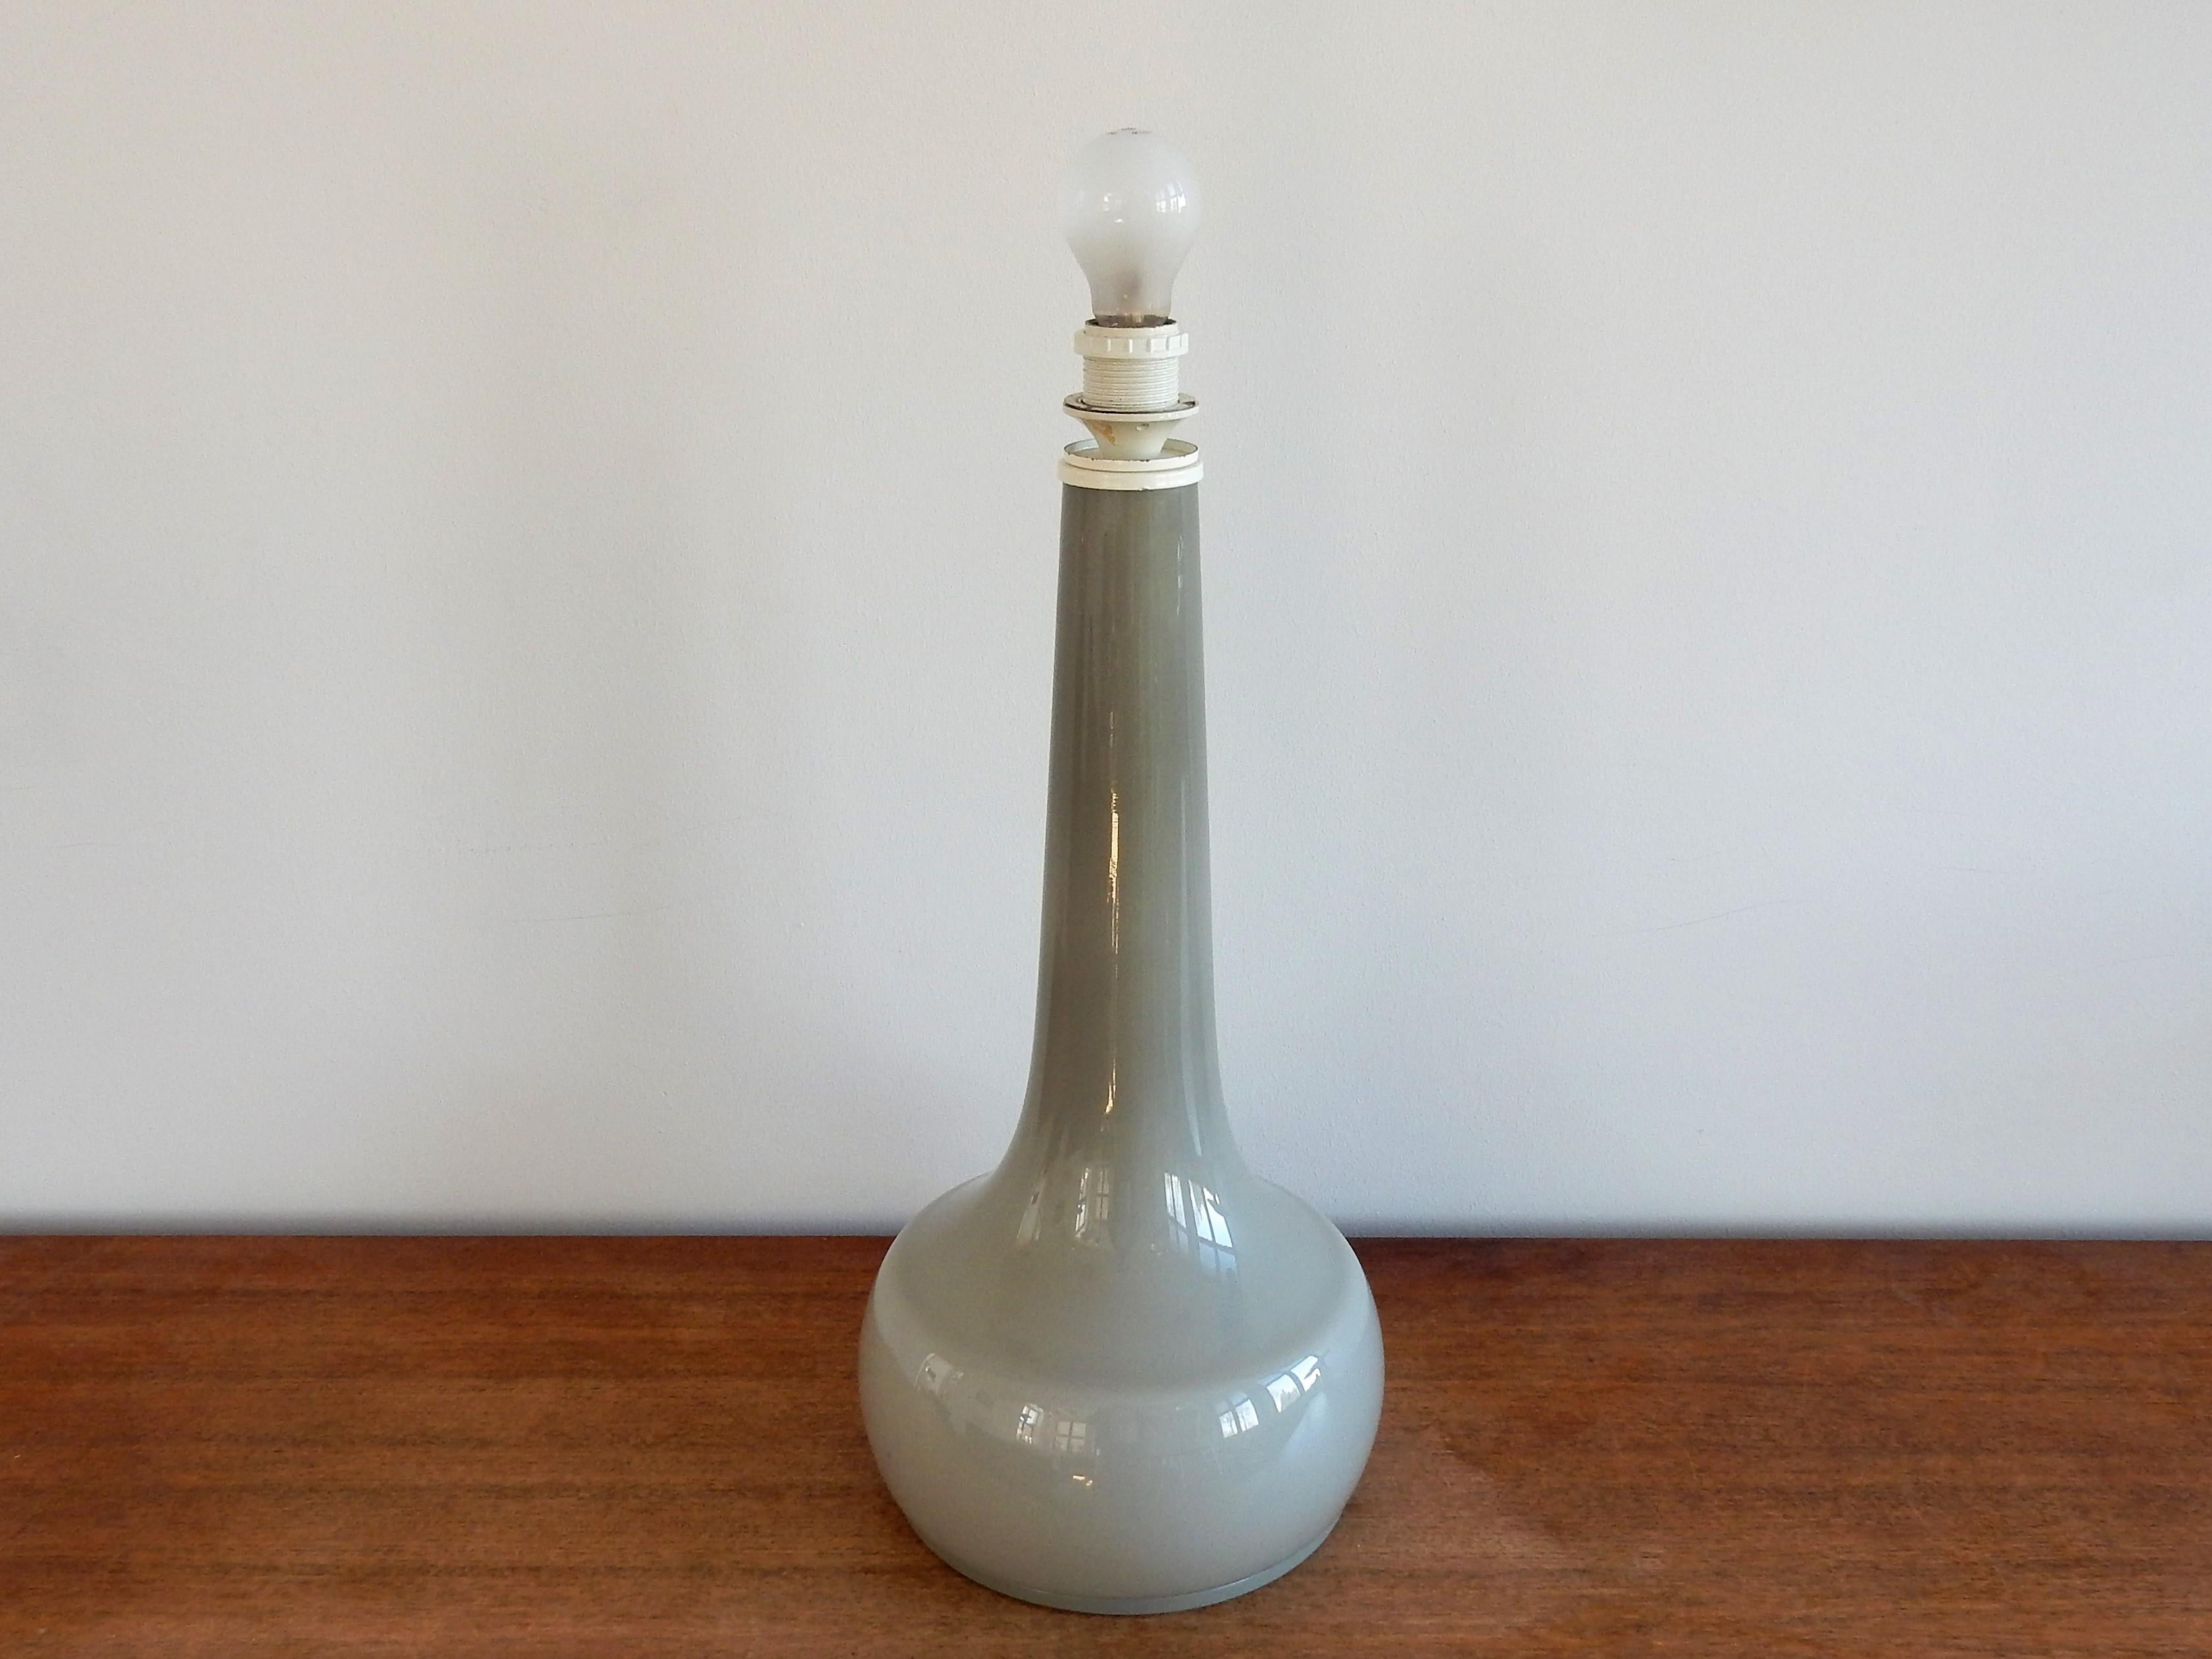 Cette lampe de table vintage d'une taille exceptionnelle est fabriquée en verre épais de couleur grise. Le type de verre et le design semblent danois. Ça pourrait très bien être Holmegaard. La lampe est en bon état avec des signes mineurs d'âge et